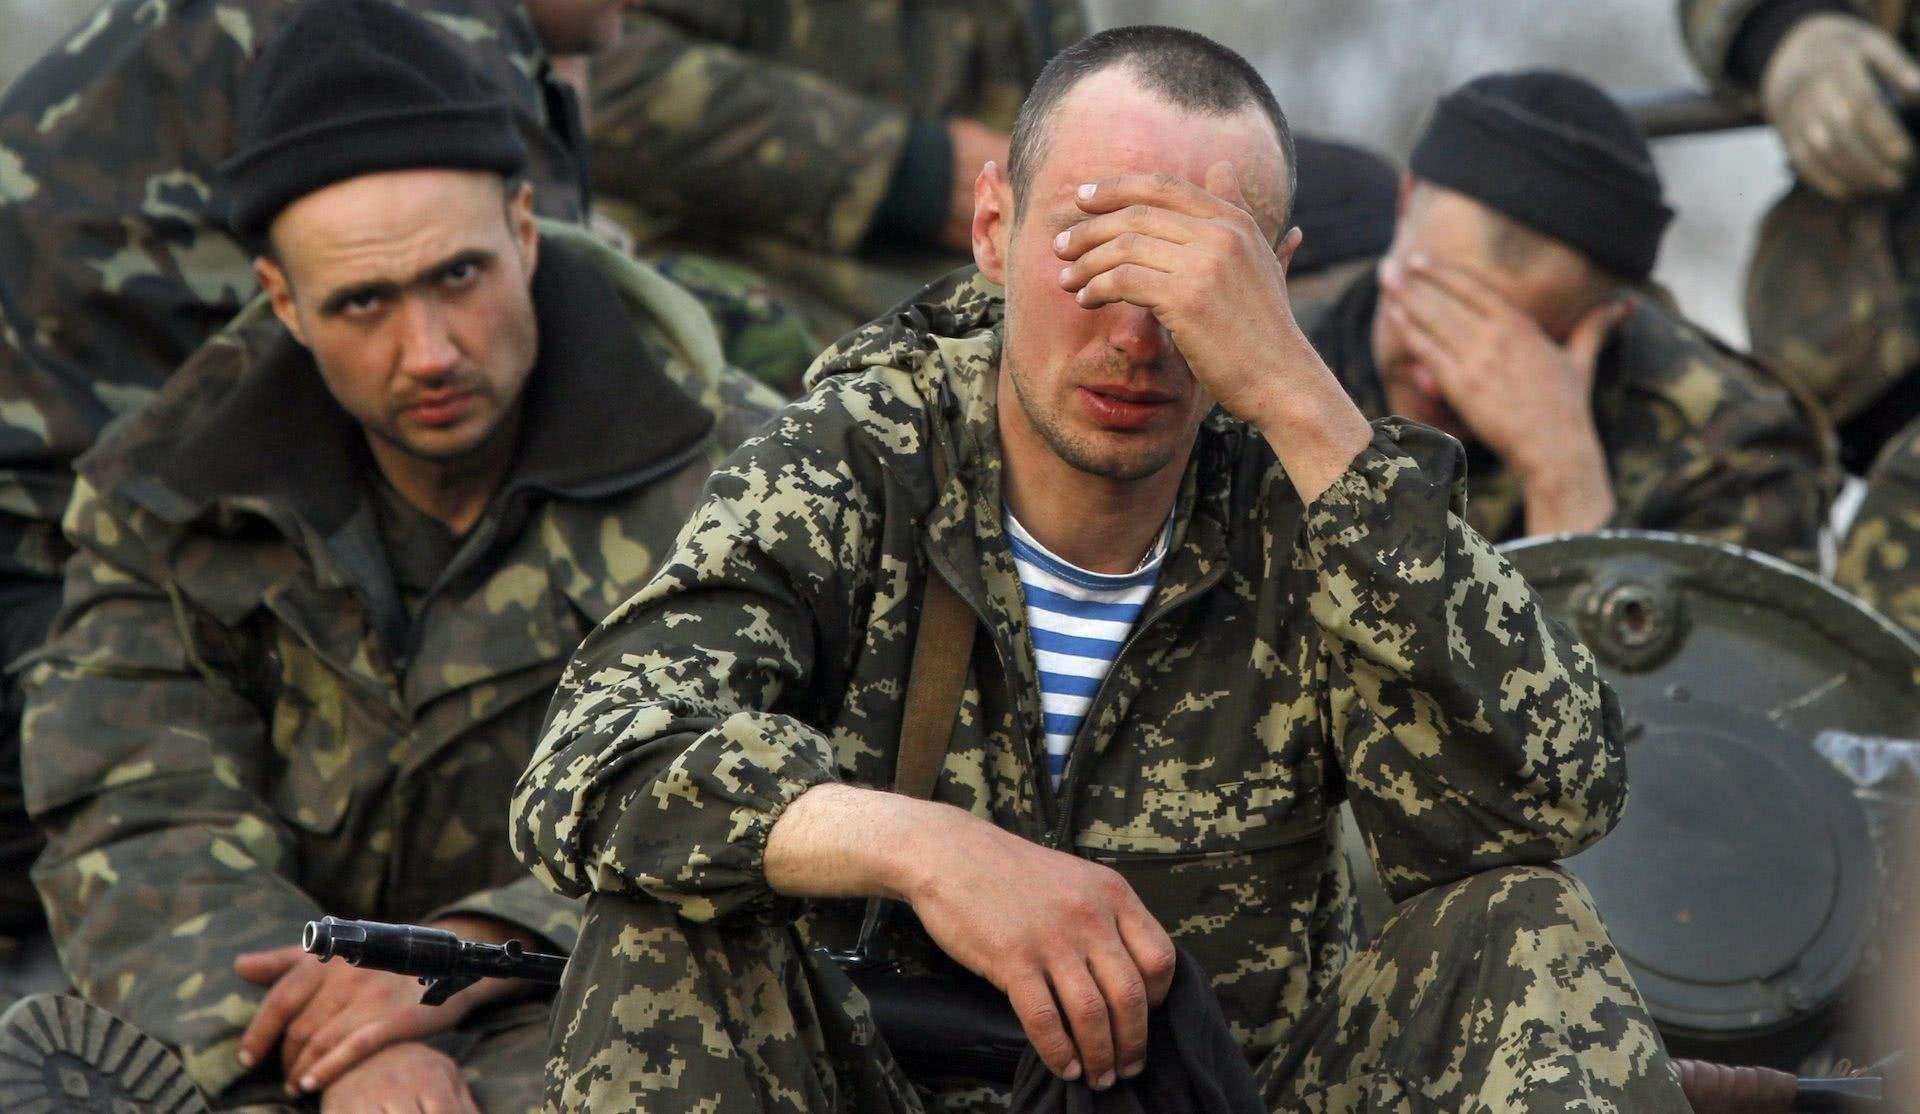 2014东乌战争图片